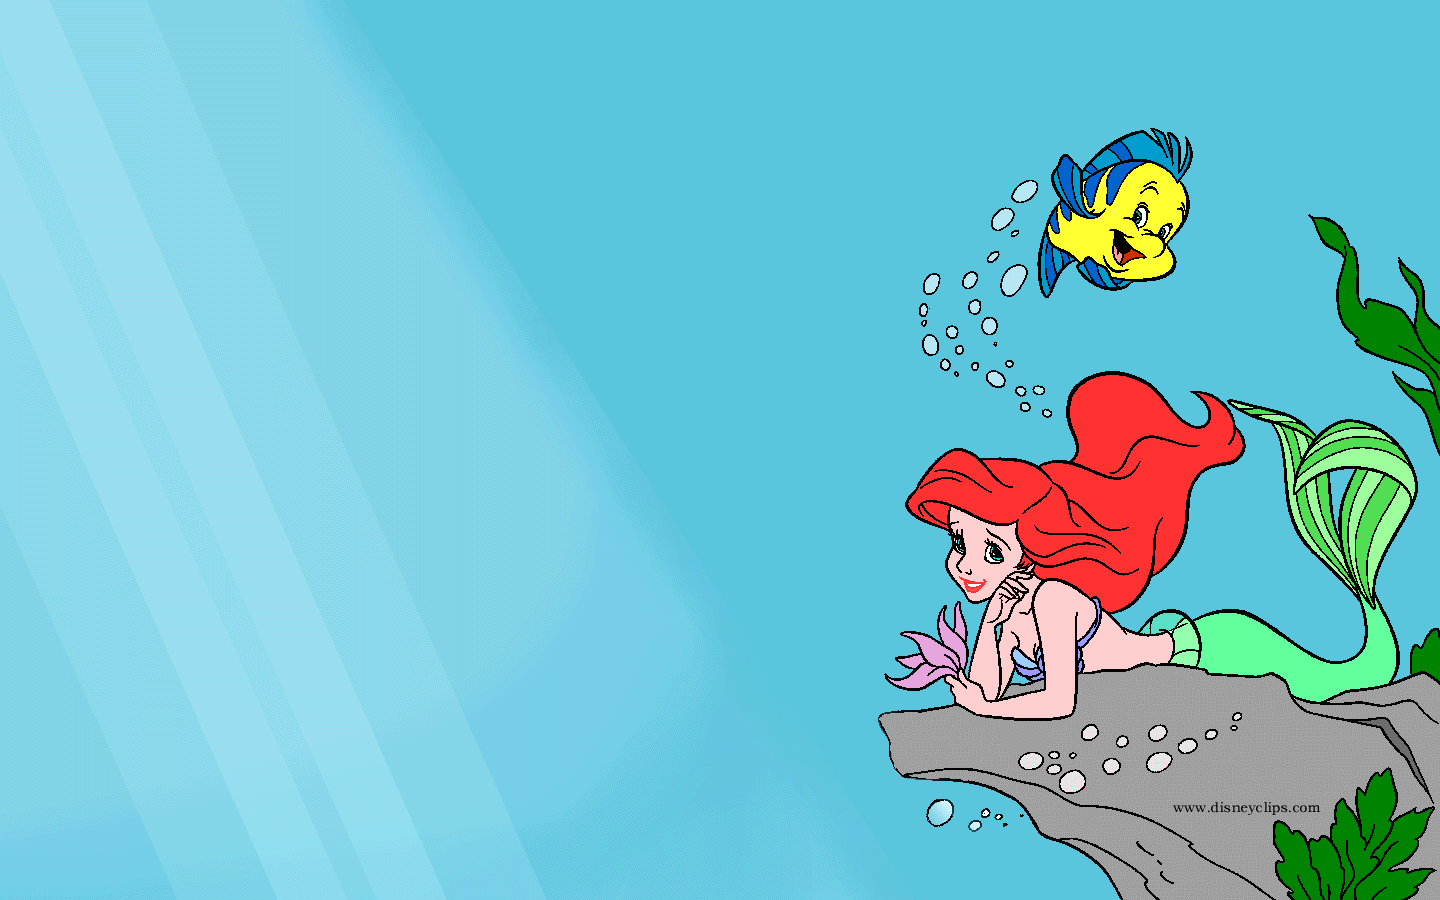 Little Mermaid HD Image Wallpaper